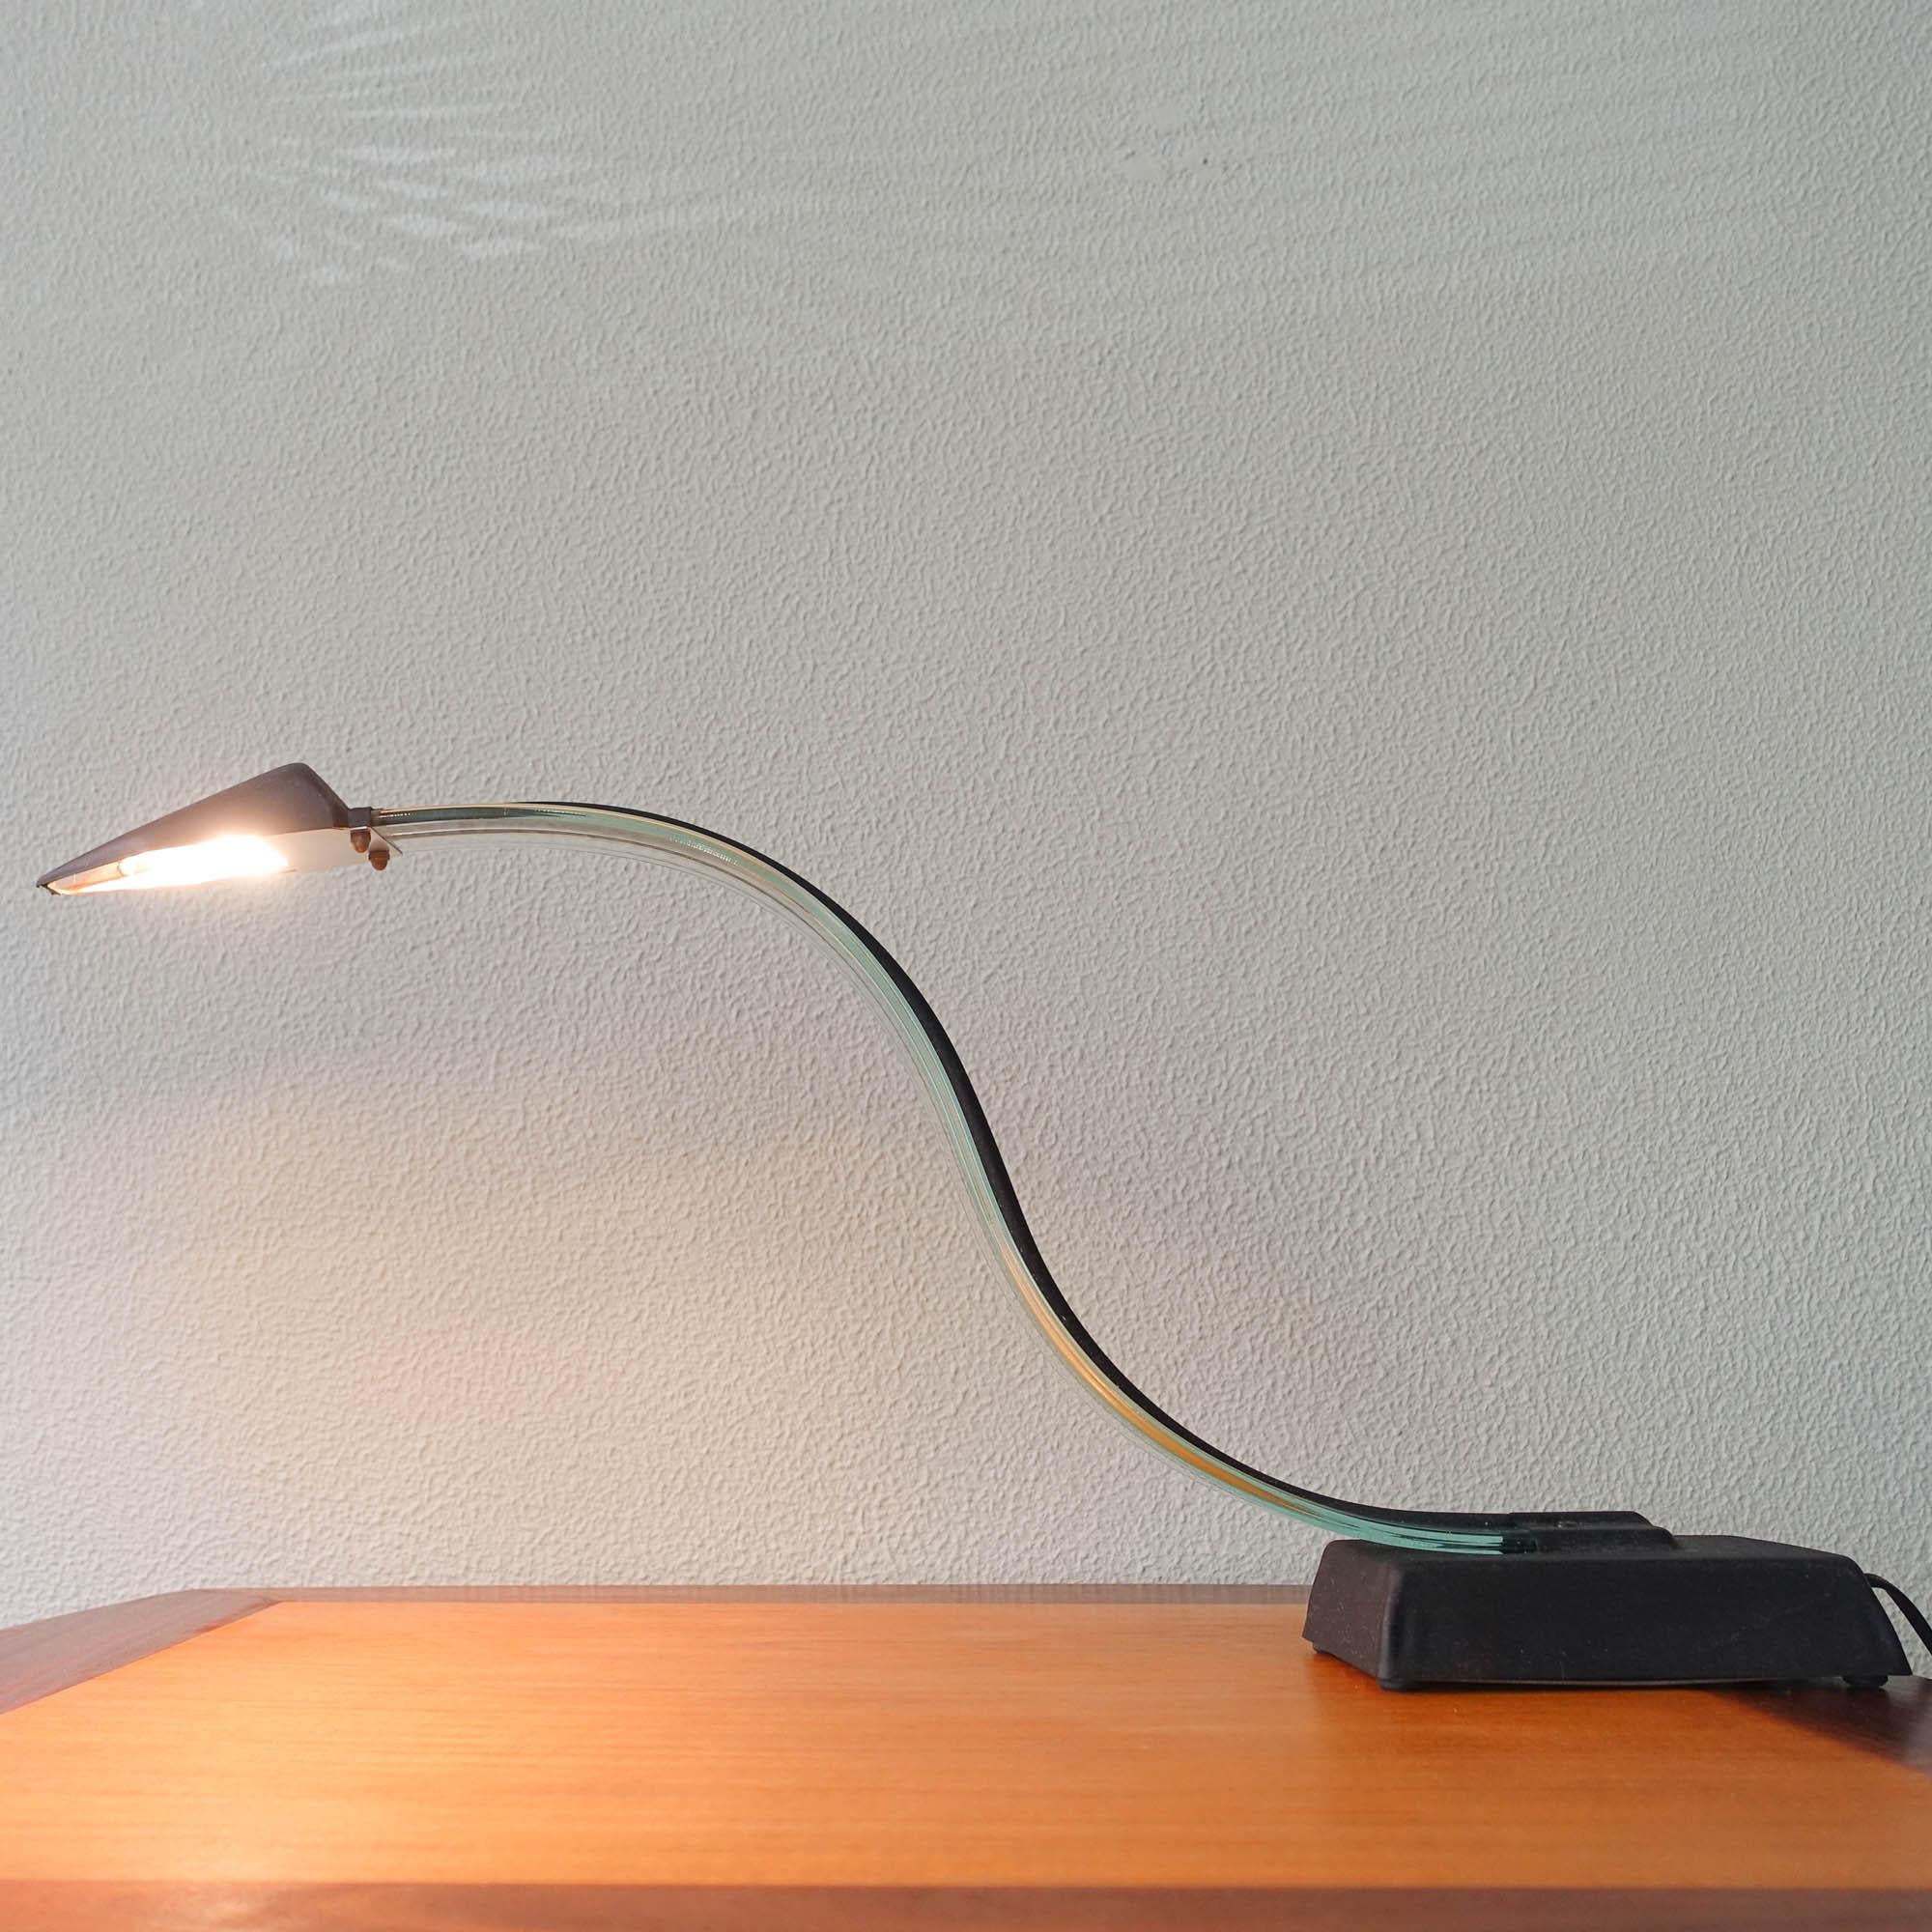 Cette lampe de table a été conçue et fabriquée en Italie dans les années 1980. Il présente un bras incurvé en Lucite et un abat-jour et une base en métal noir.
En outre, la lampe de bureau est dotée d'un interrupteur à deux positions et d'une